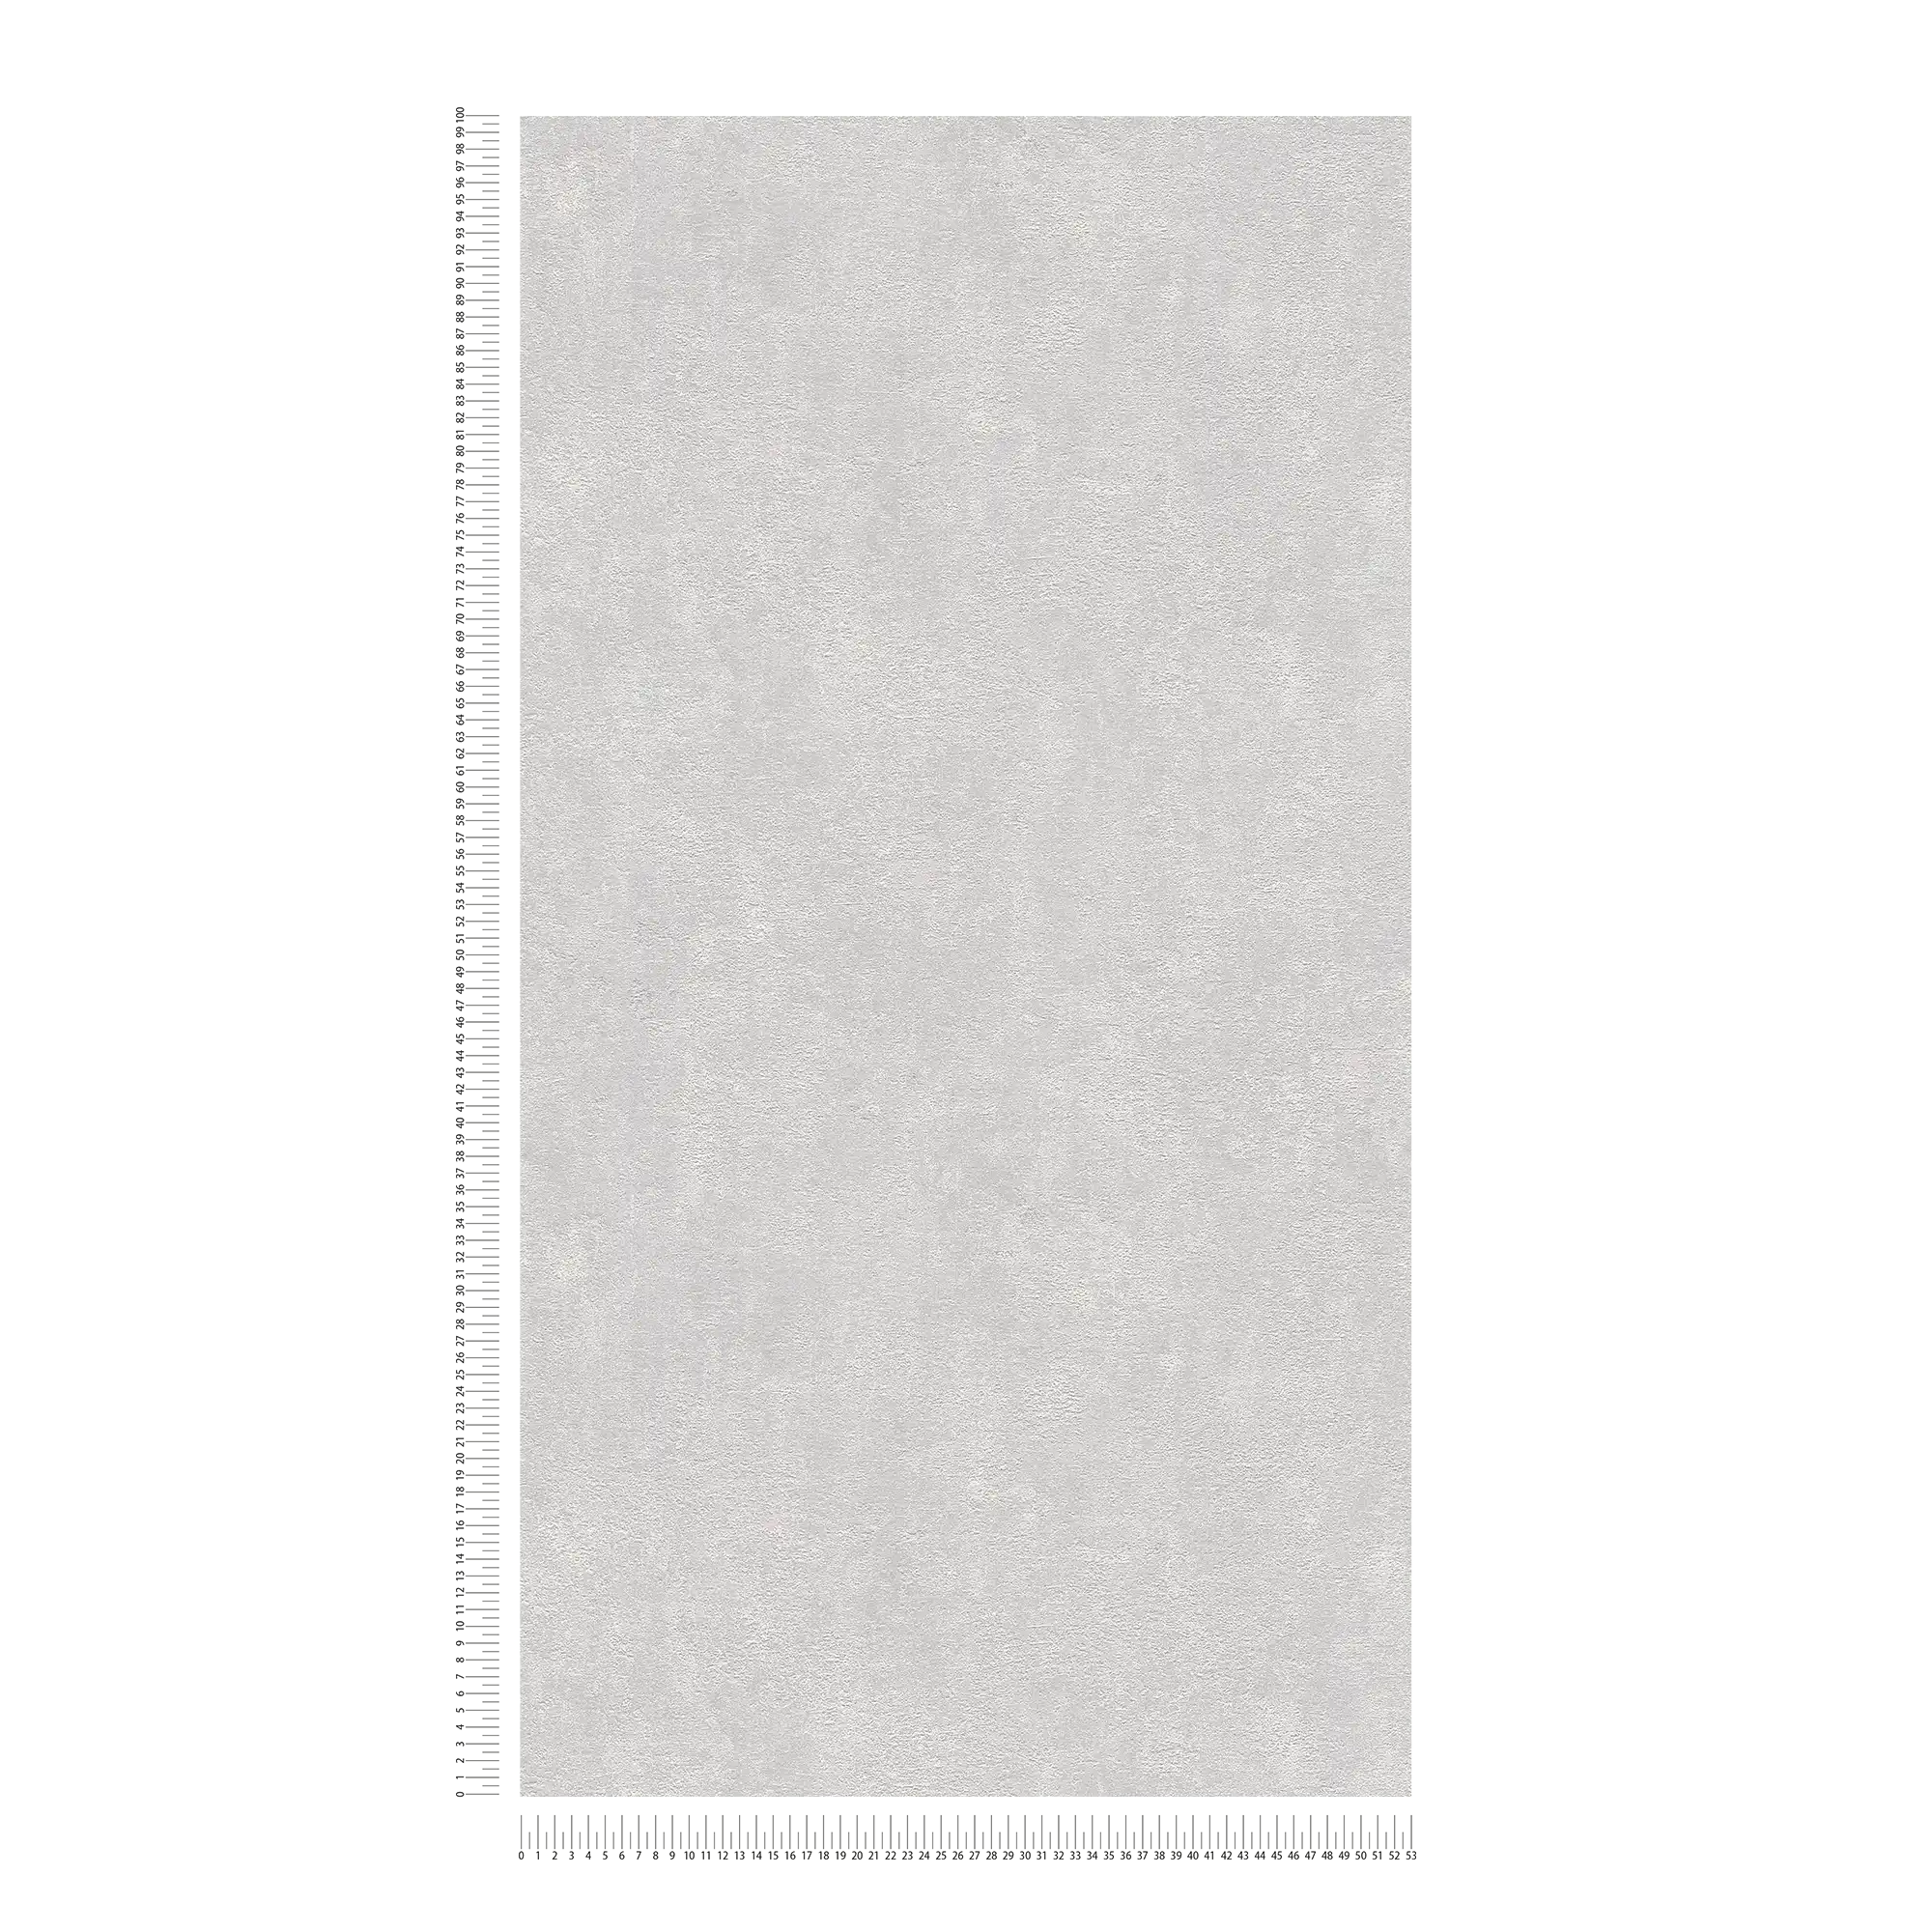             Carta da parati struttura in gesso, liscia e satinata - grigio chiaro
        